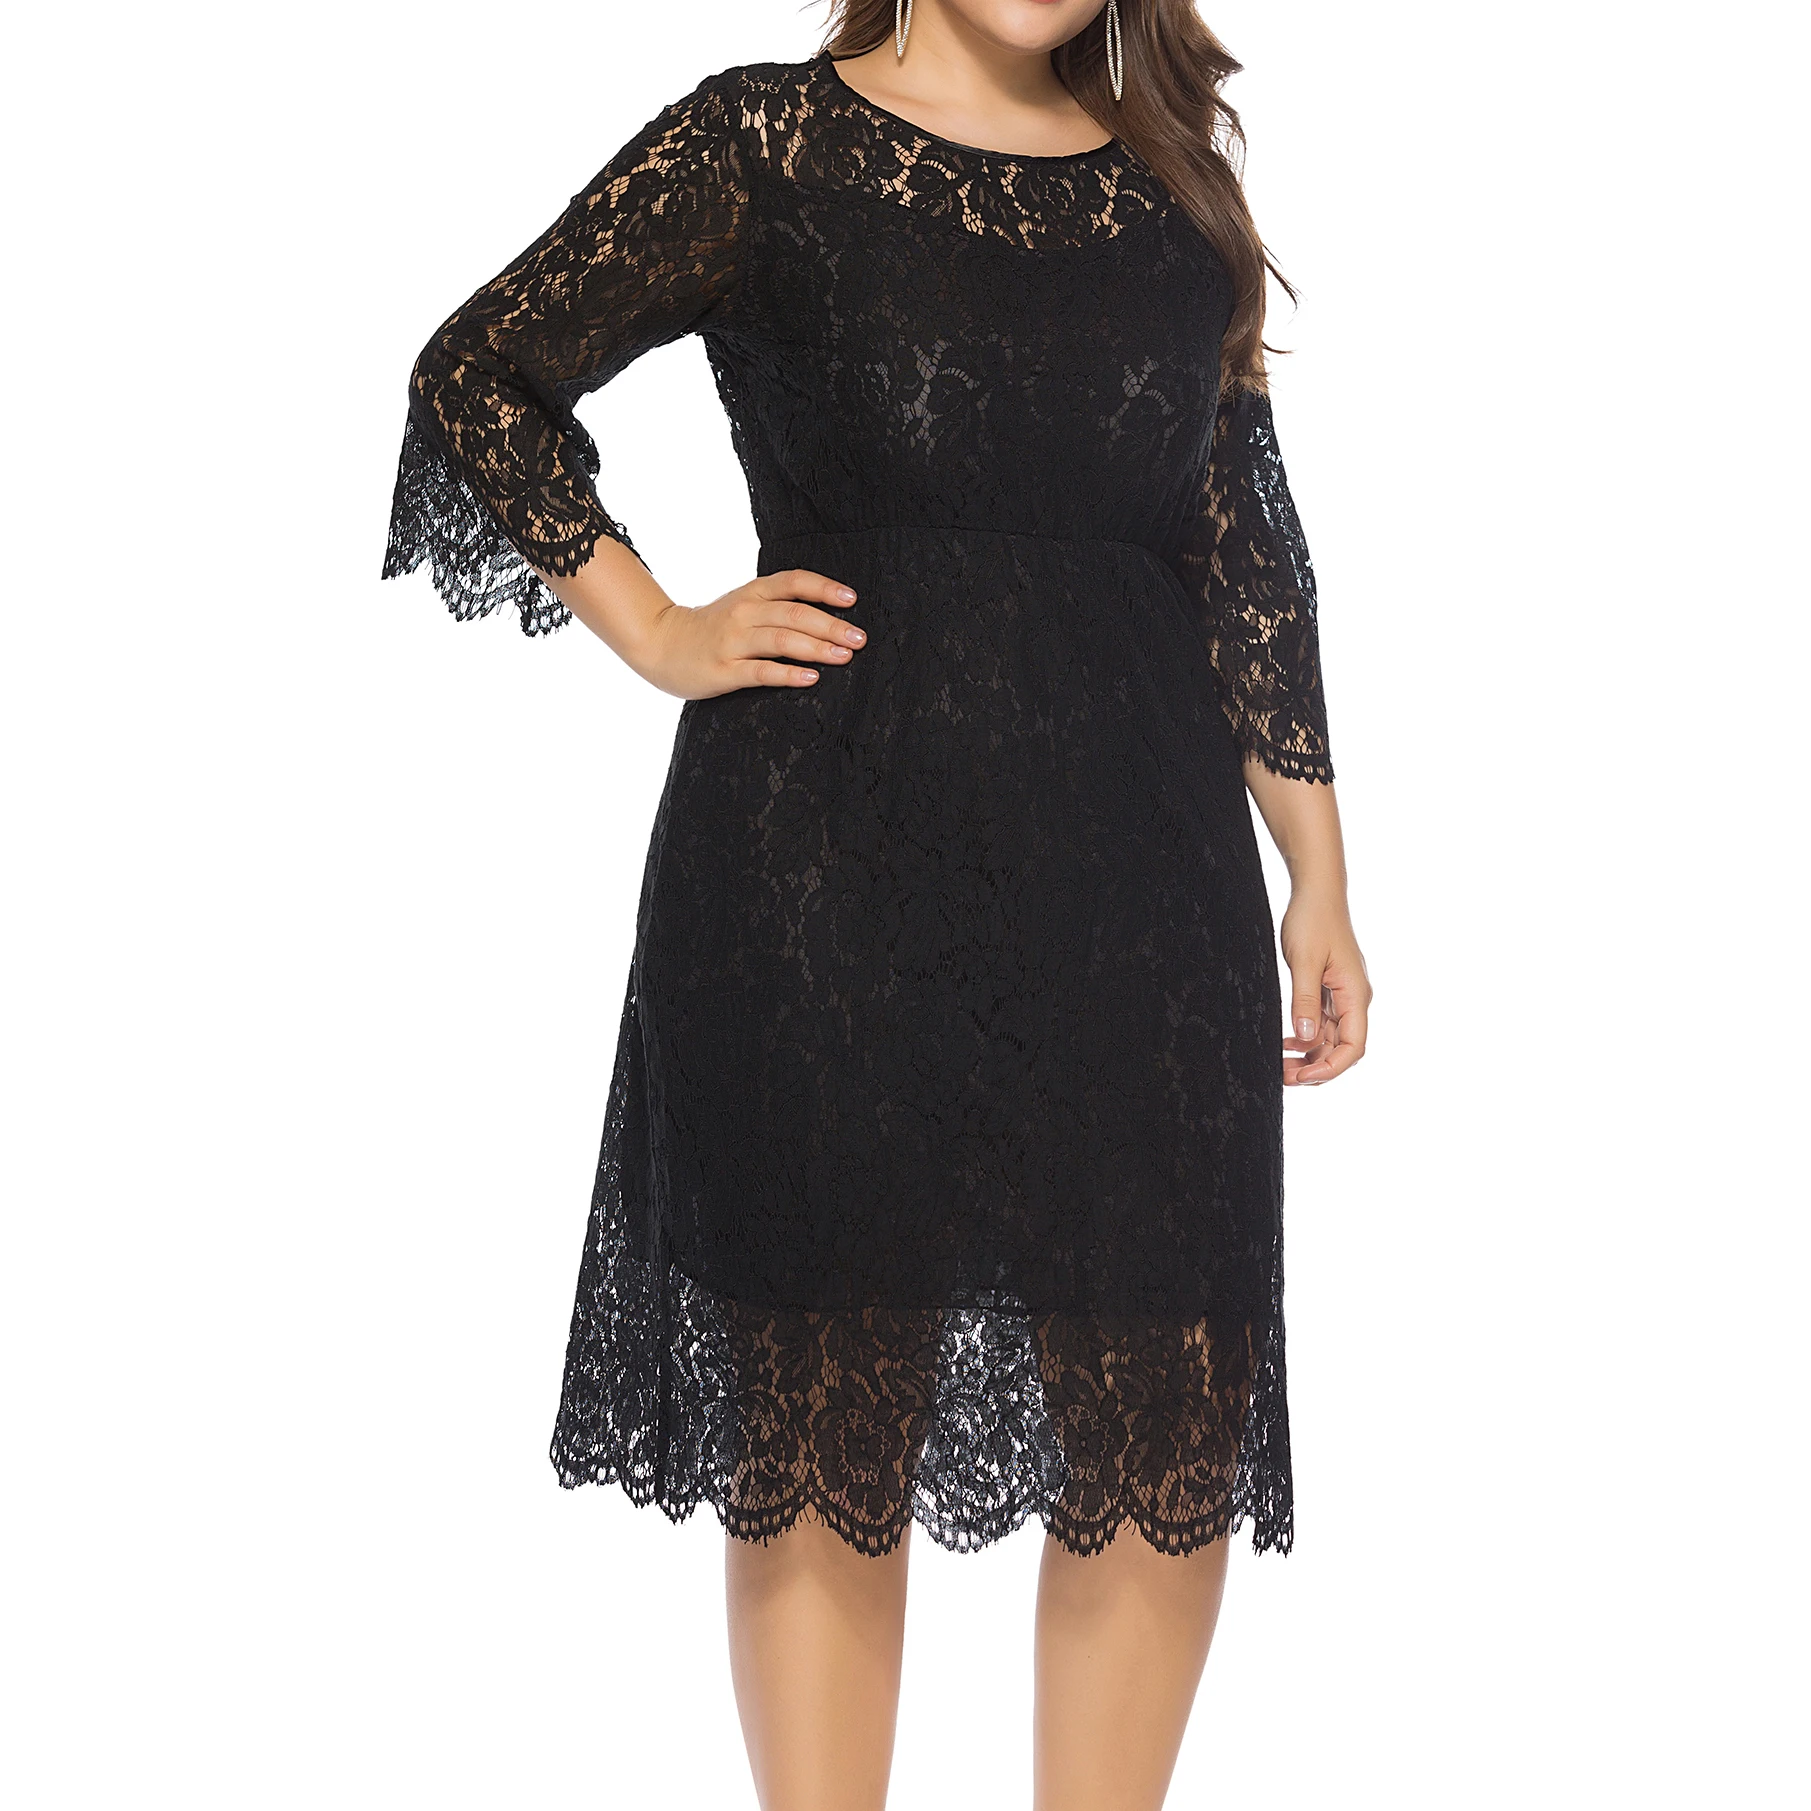 Wholesale Plus Size Apparel Mature Fat Women Black Lace Dresses - Buy ...